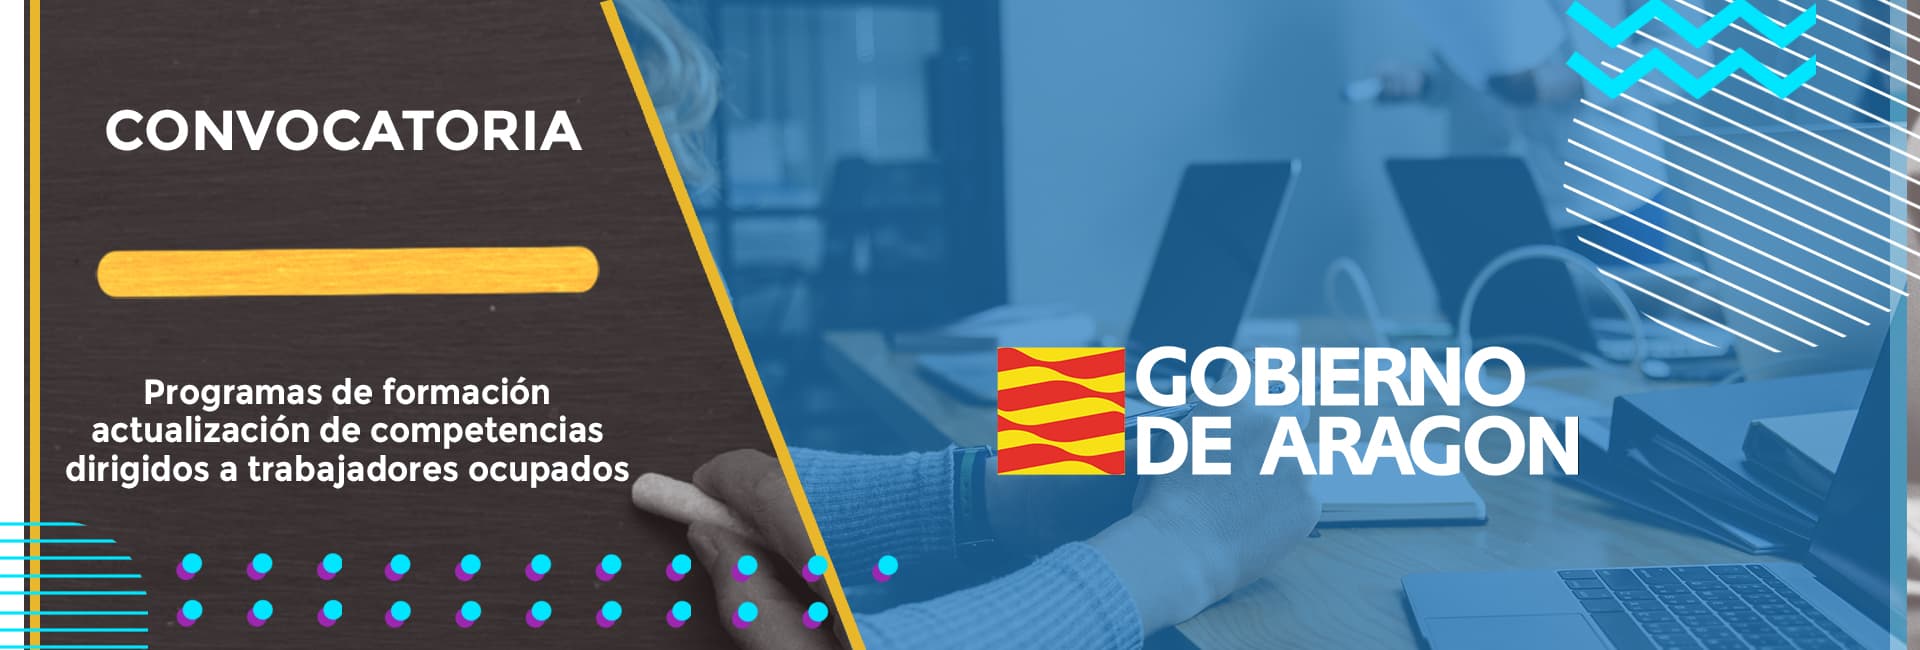 Anunciada la convocatoria de subvenciones para acciones formativas para la mejora de las competencias de personas trabajadoras ocupadas en Aragón